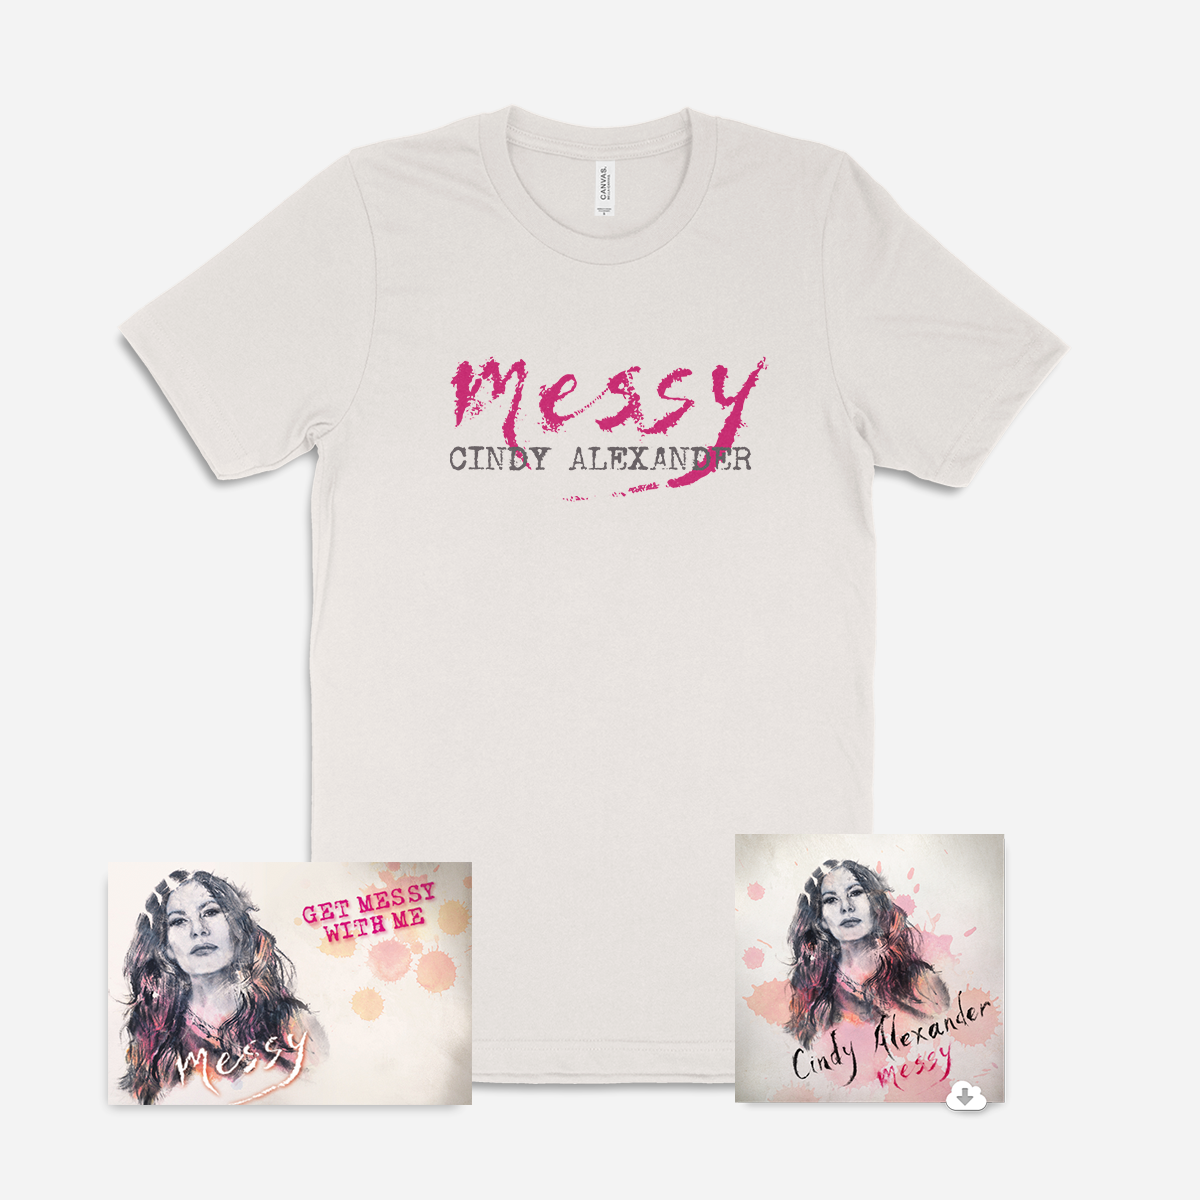 Messy - T-Shirt + Digital Album